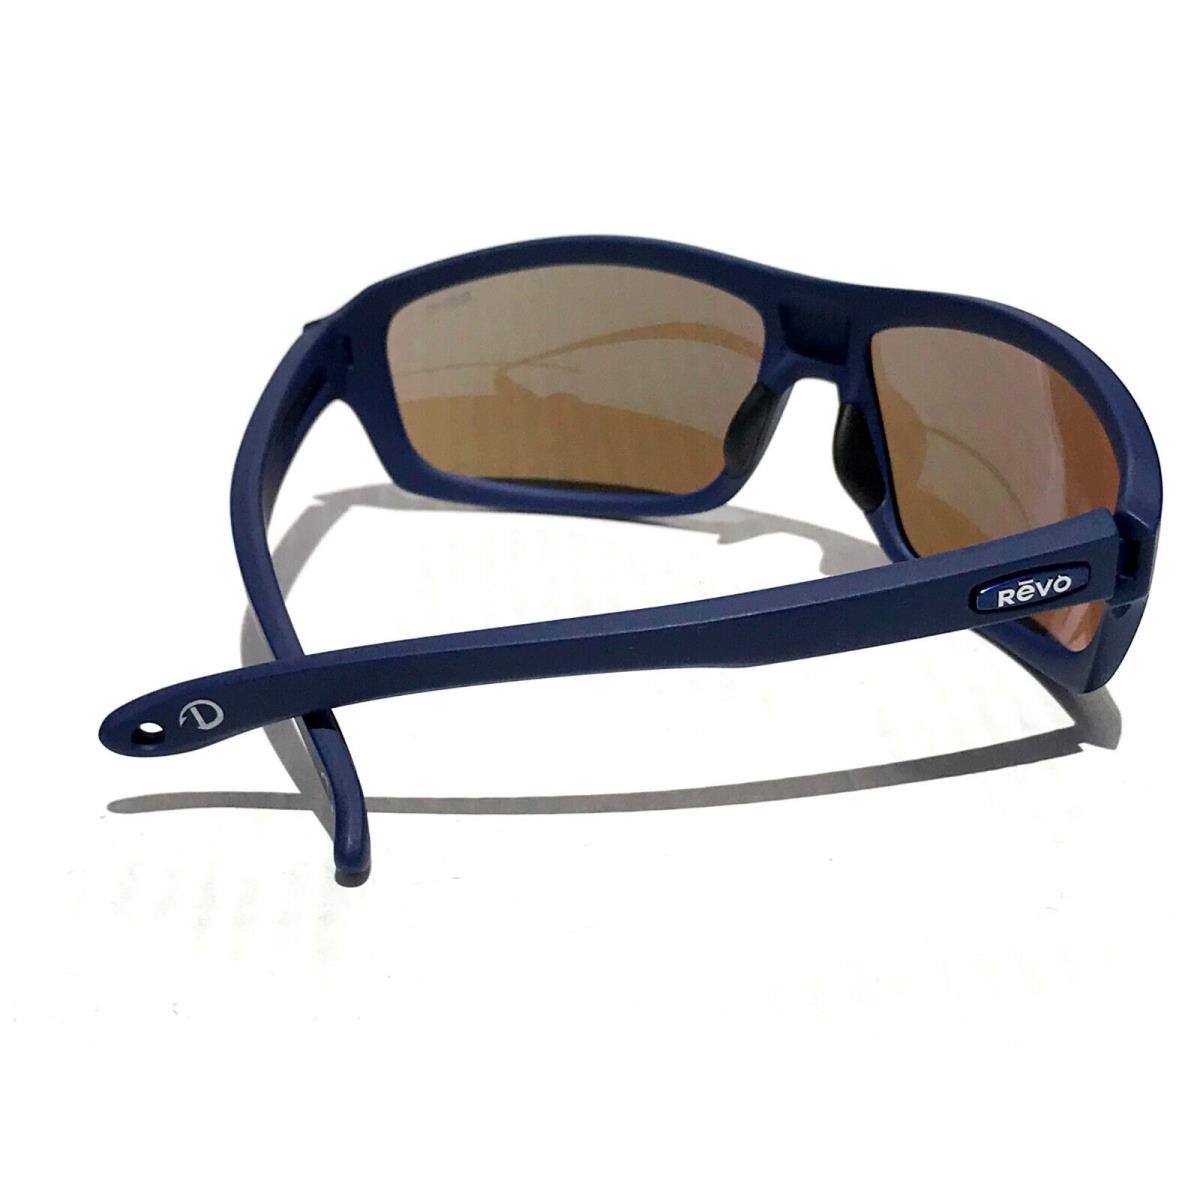 Revo sunglasses Mahi - Blue Frame, Blue Lens